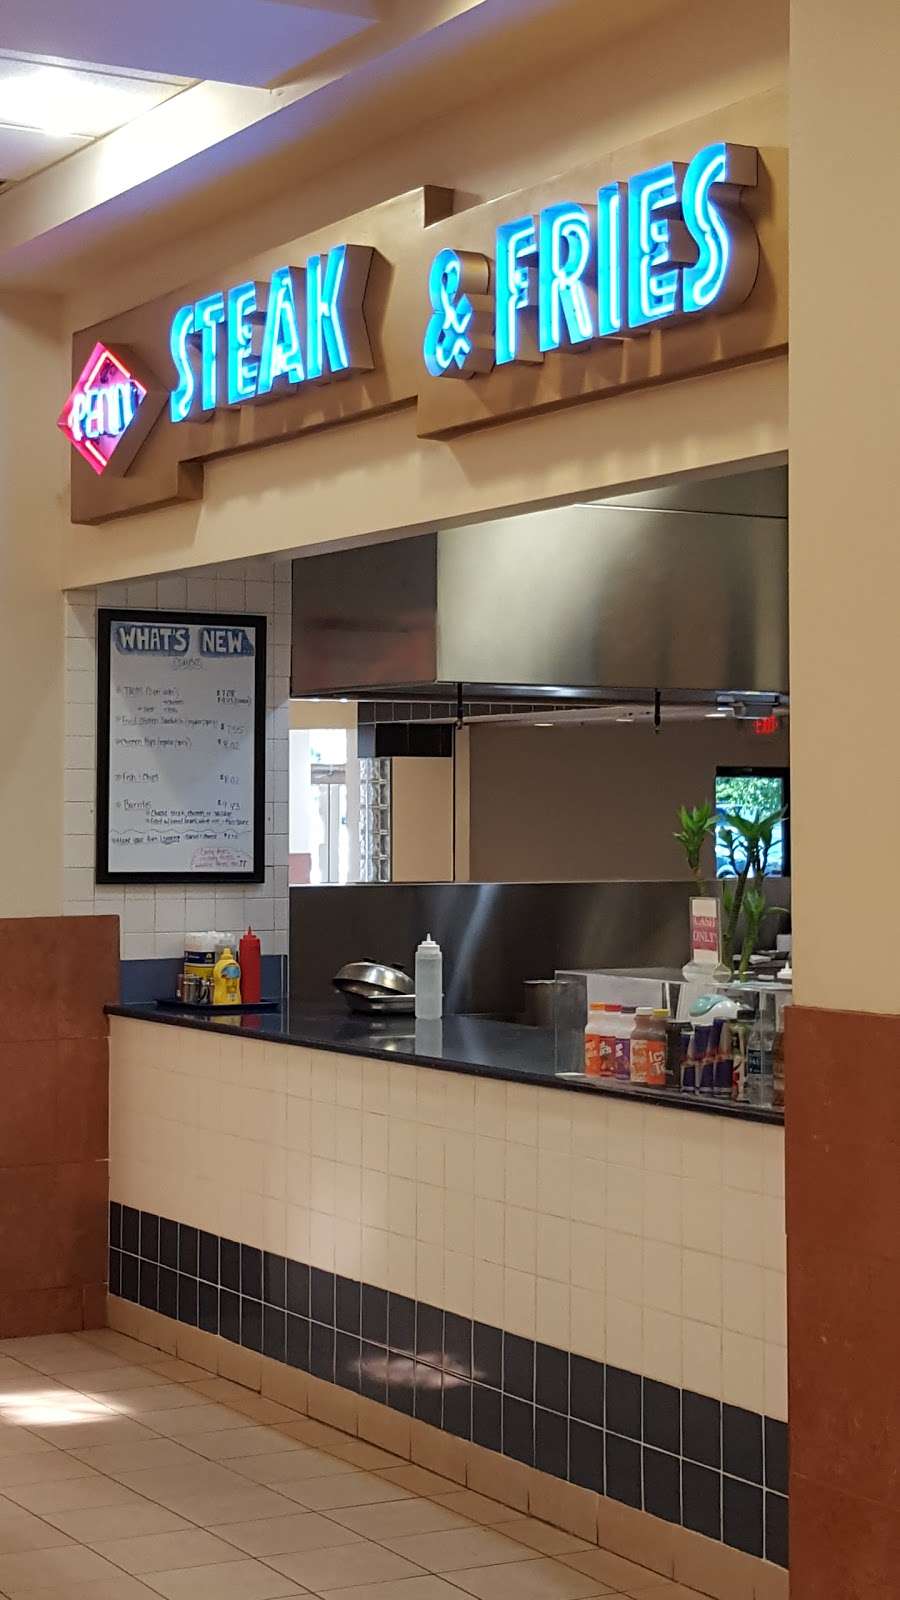 Penn Steak & Fries | 351 W Schuylkill Rd, Pottstown, PA 19465